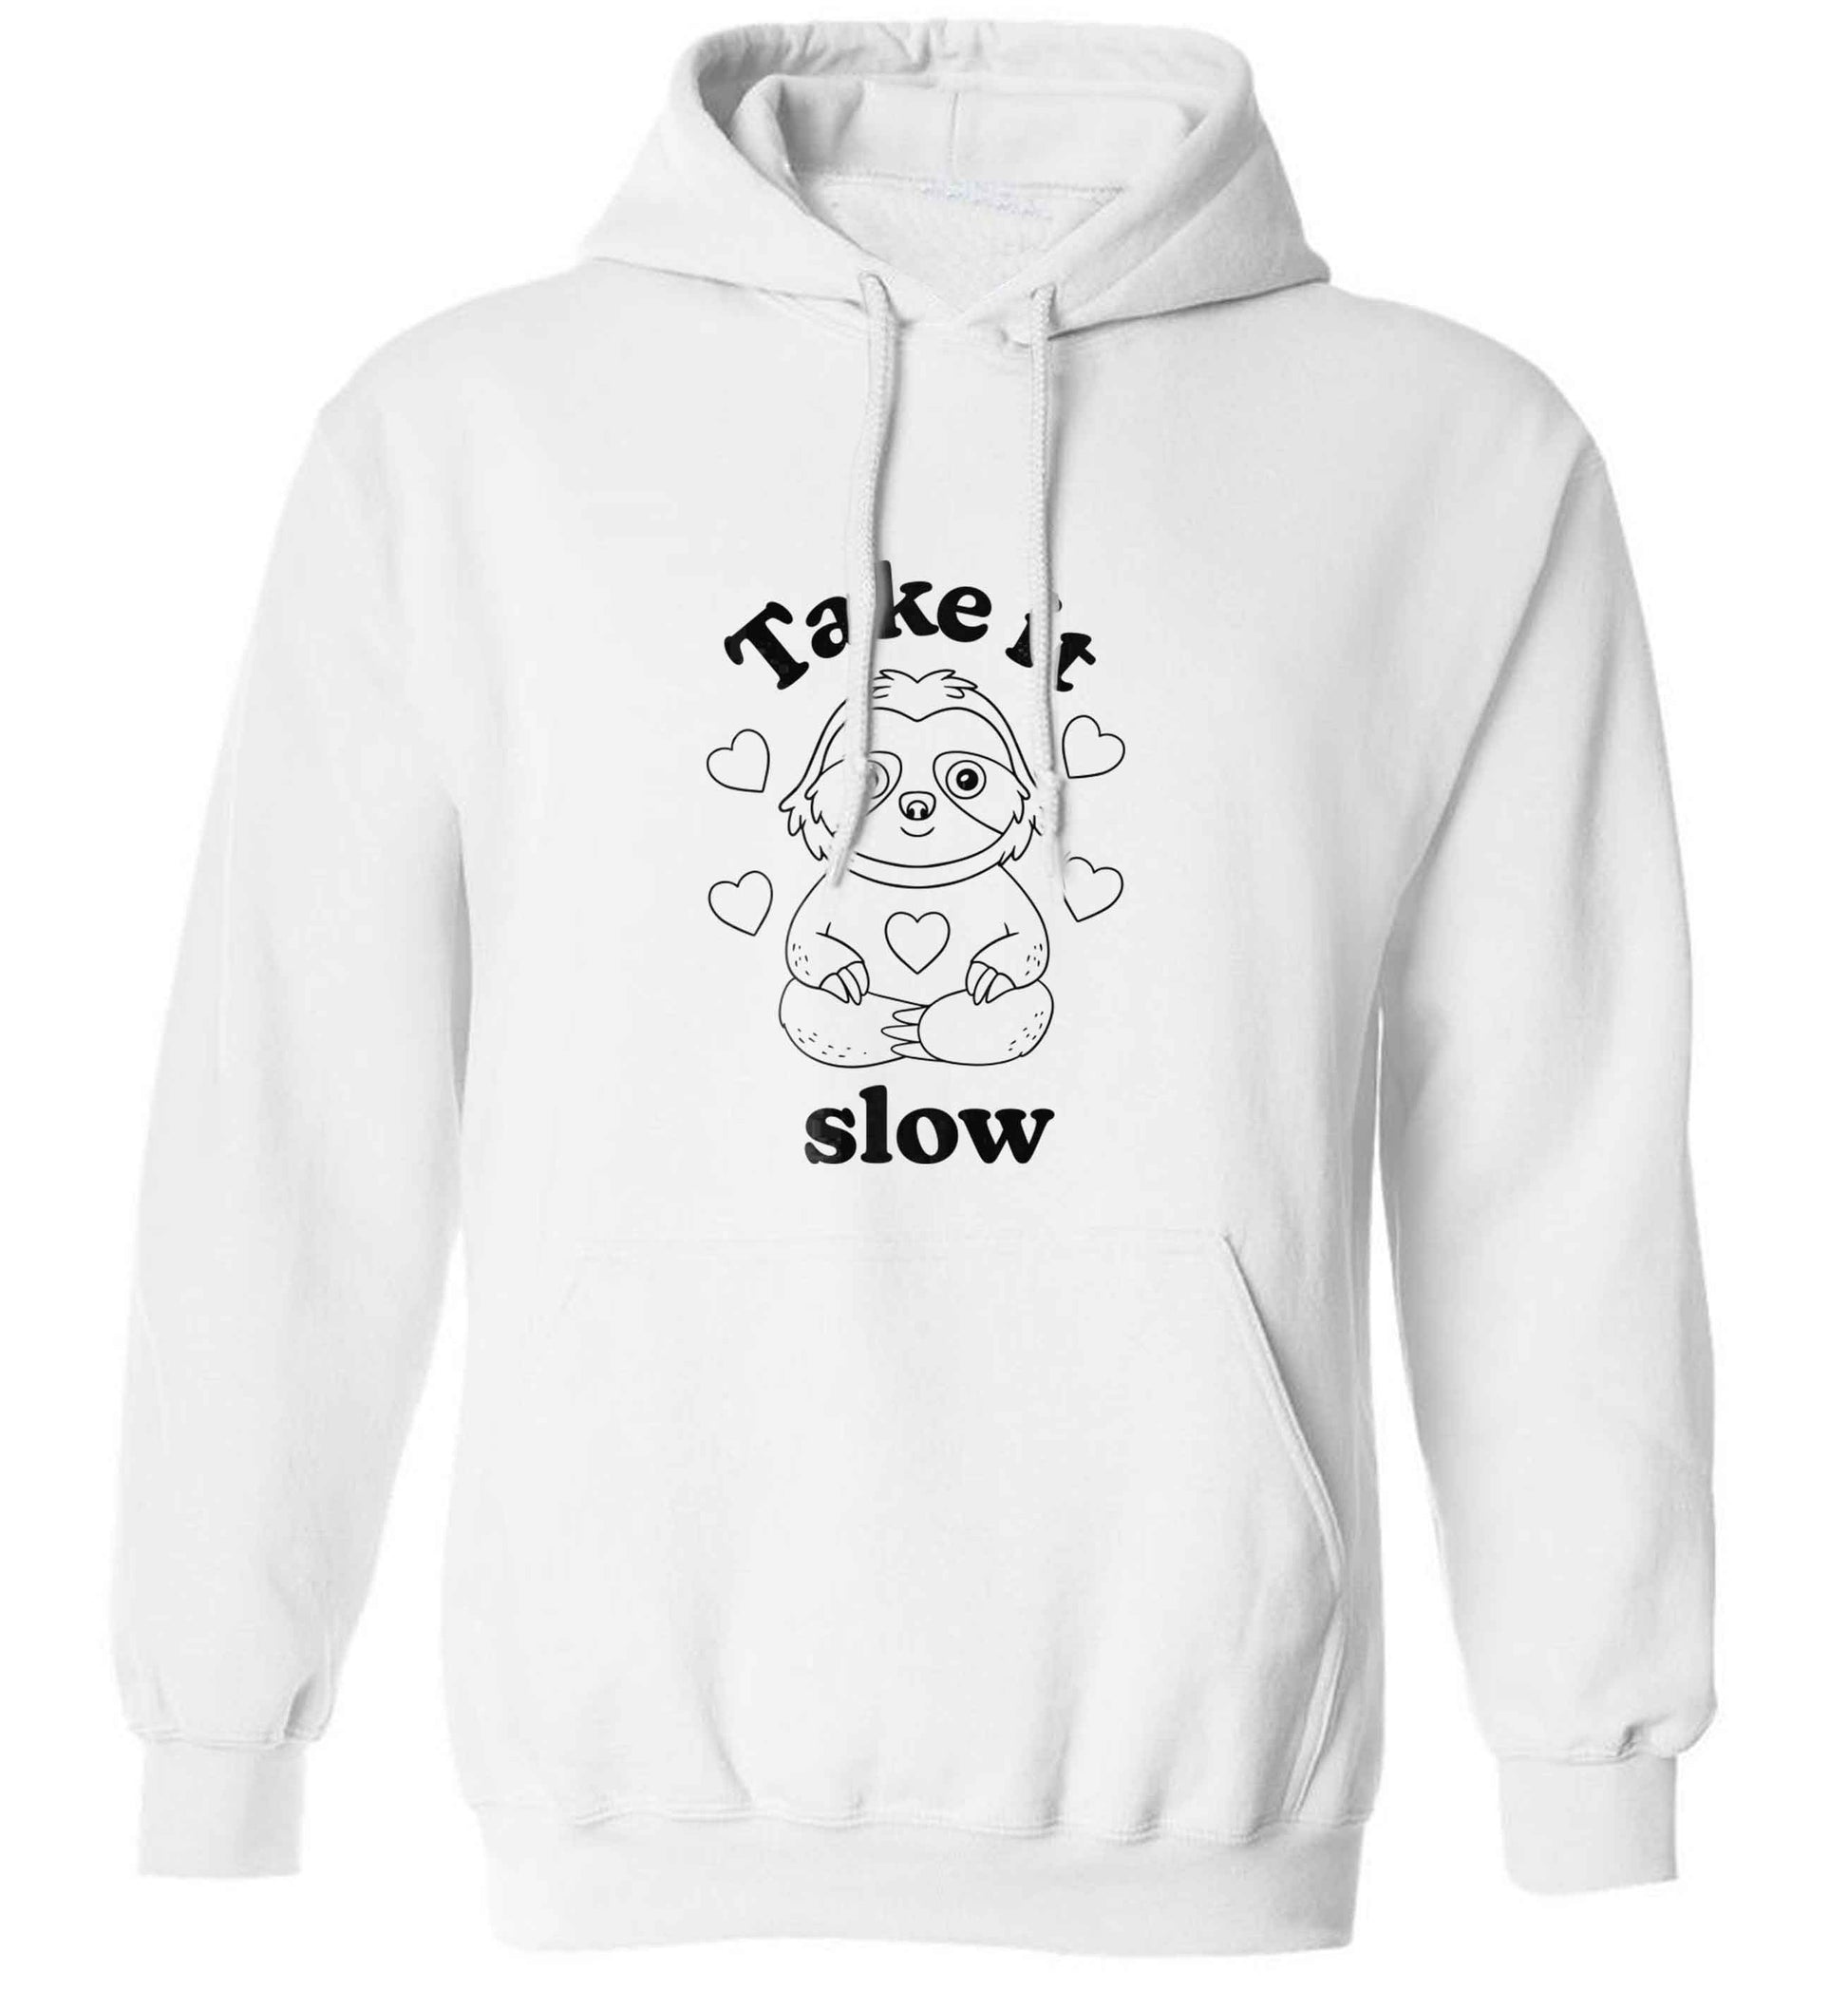 Take it slow adults unisex white hoodie 2XL